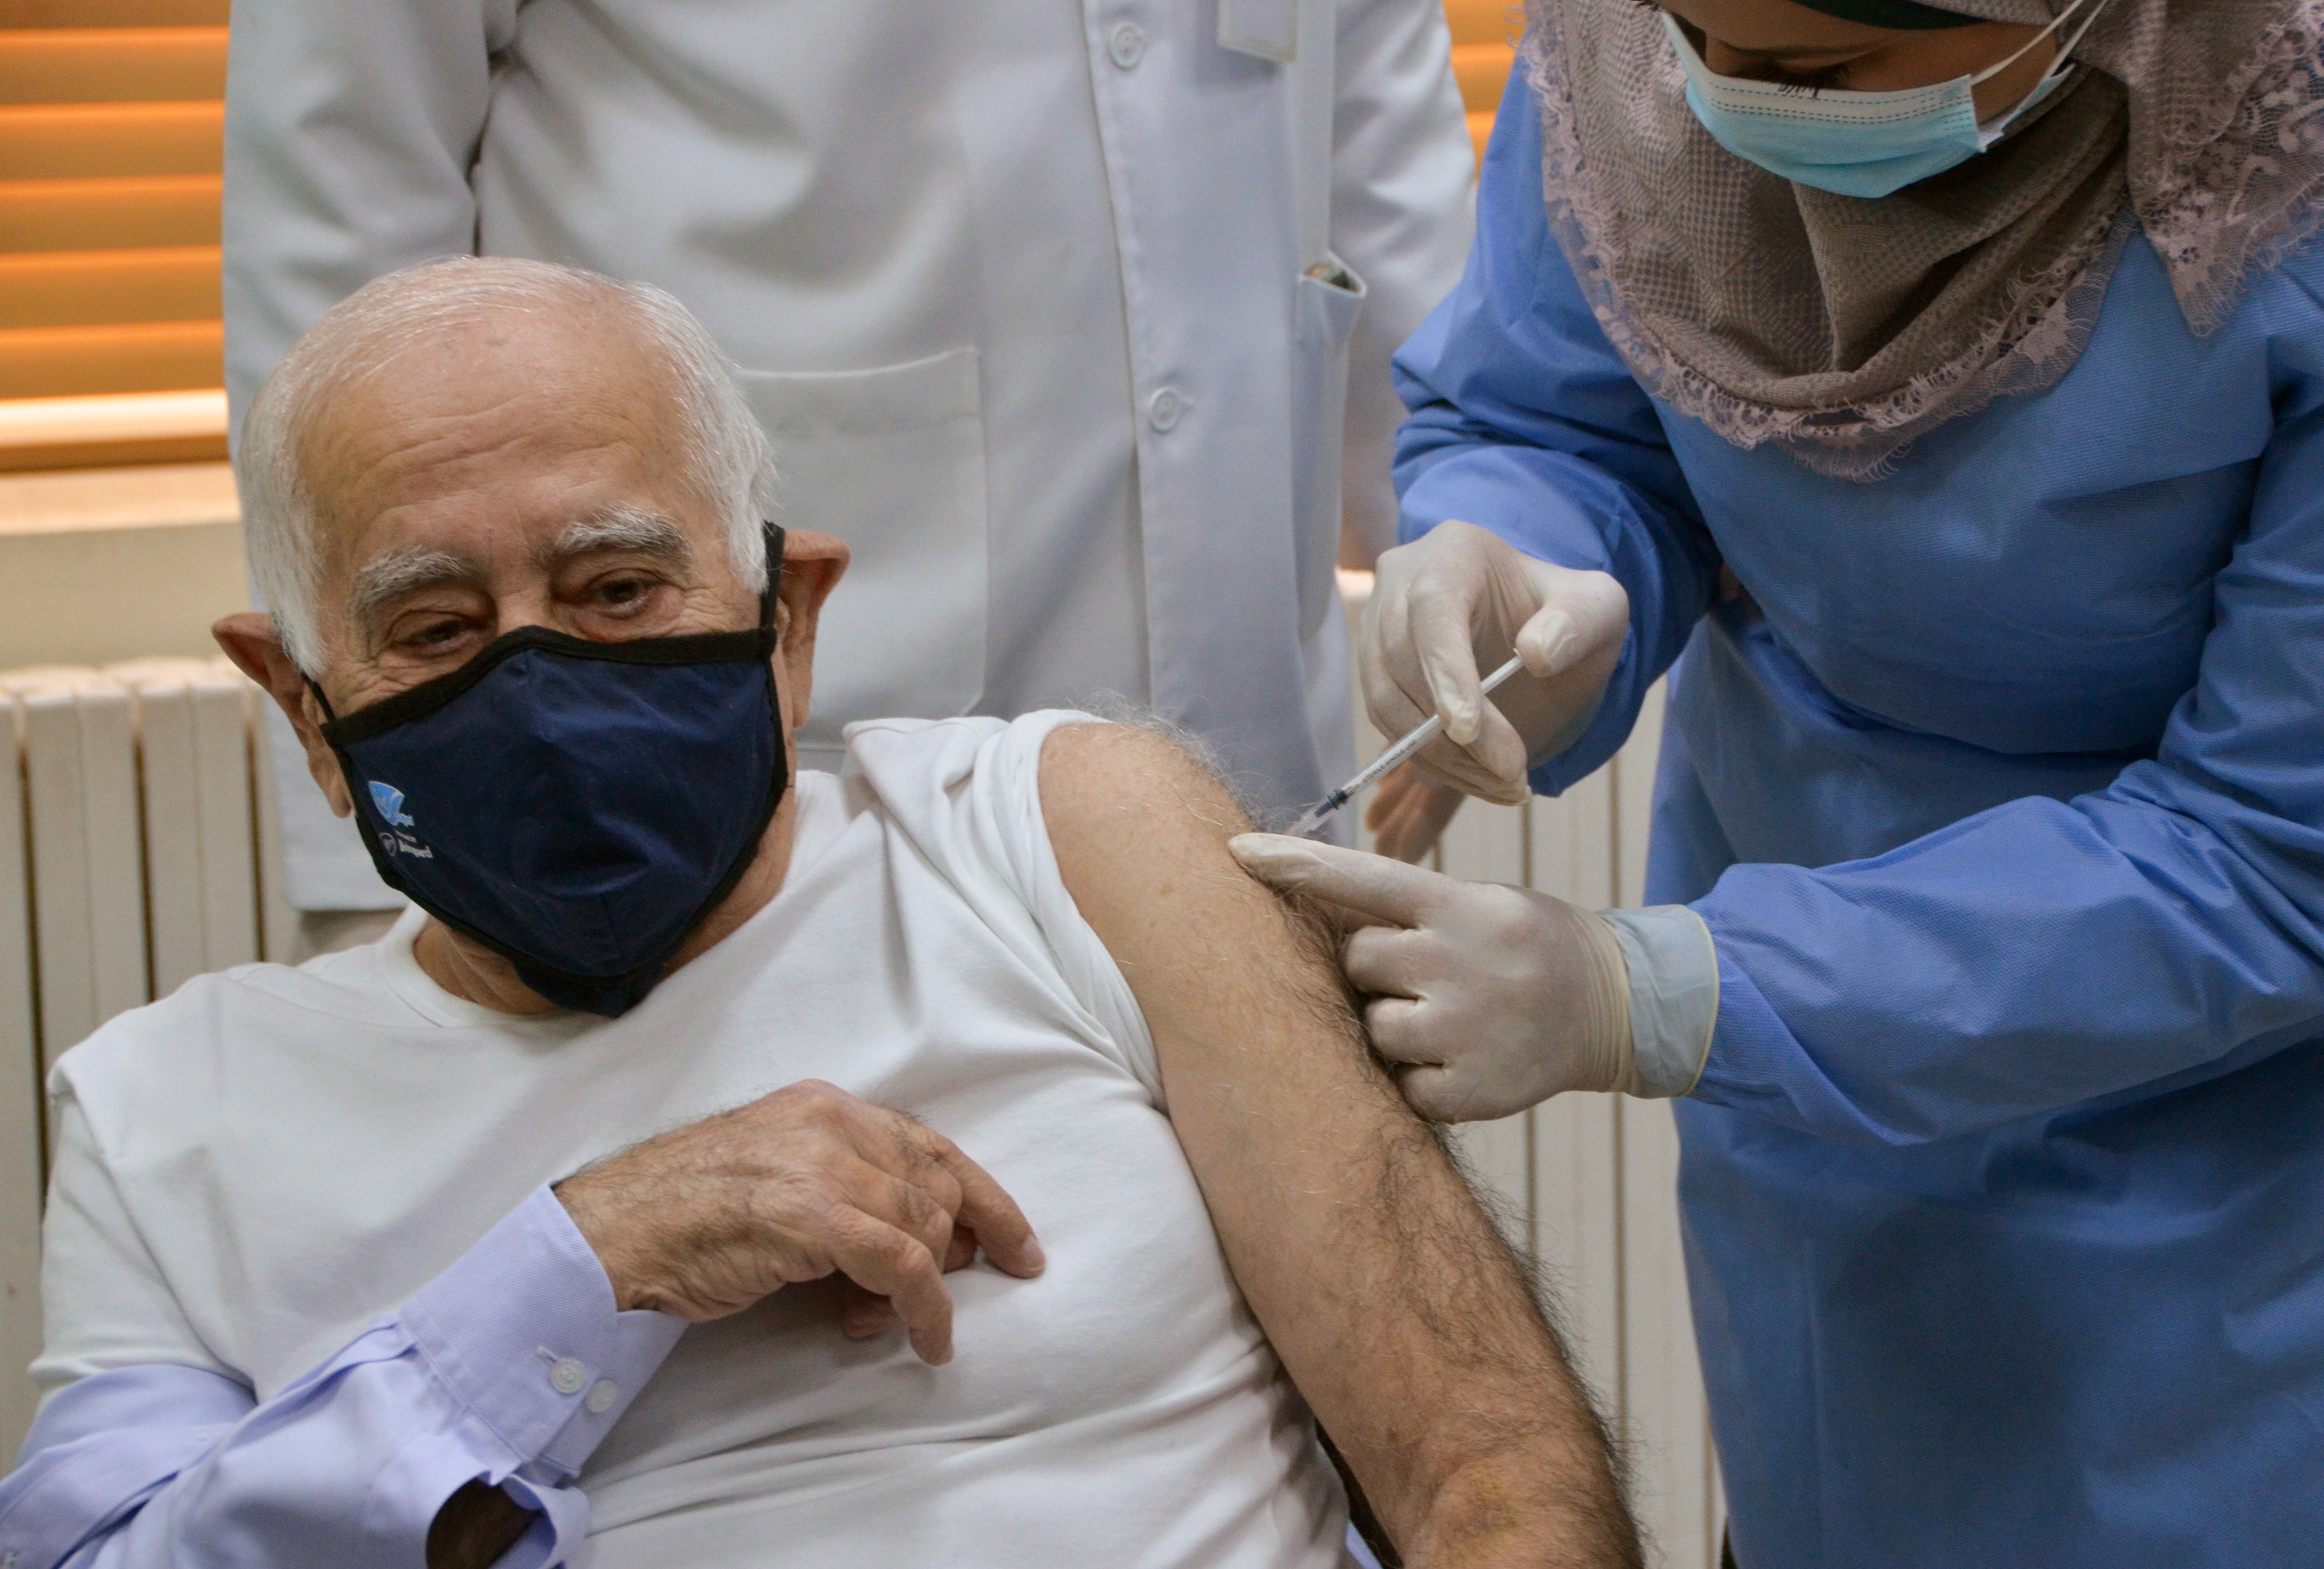 Udseende kom over Det Sign up for shots, Jordan urges citizens as vaccination drive starts |  Reuters